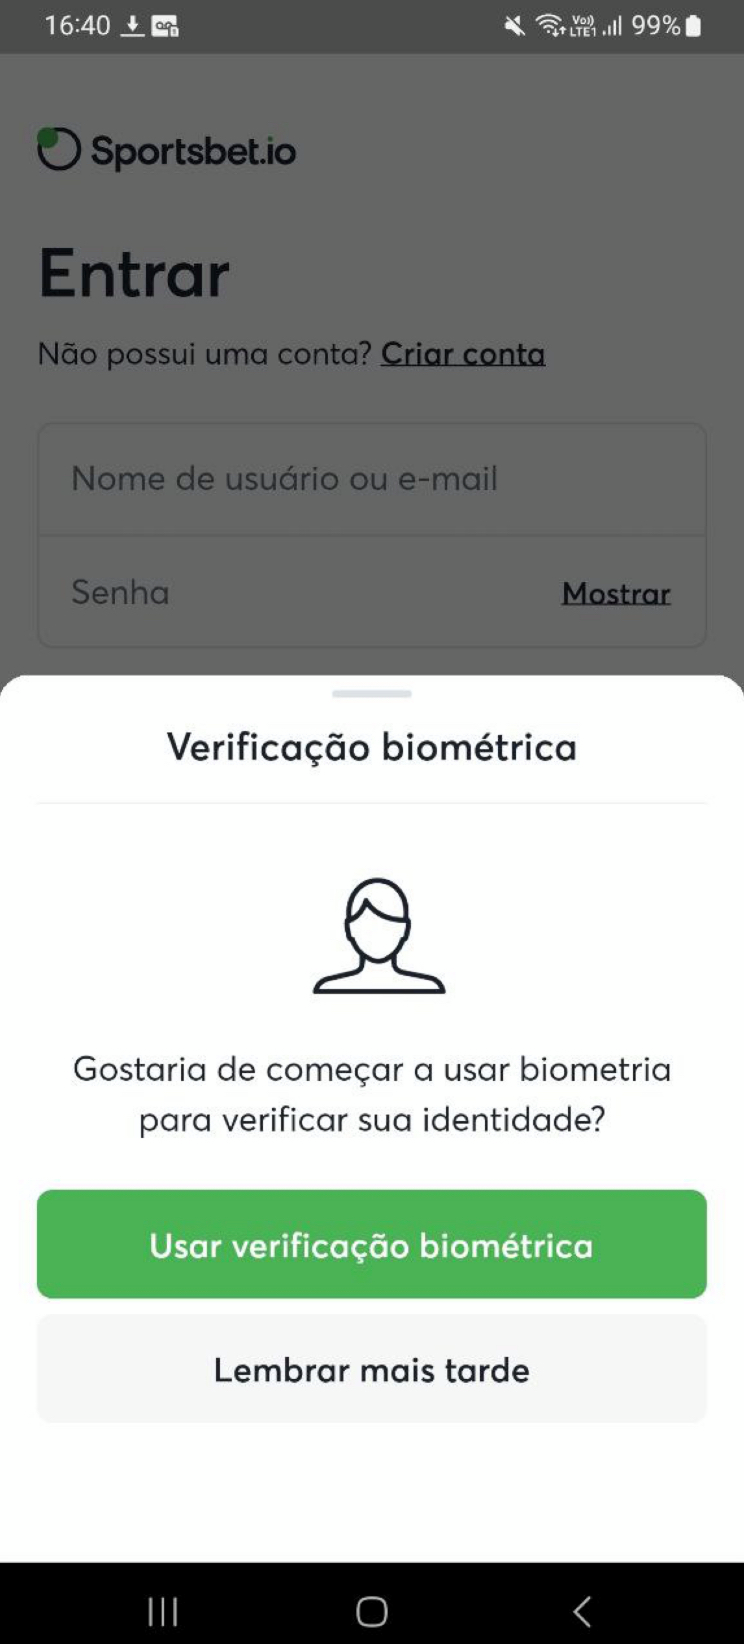 Após o primeiro login, você pode configurar o acesso com biometria.